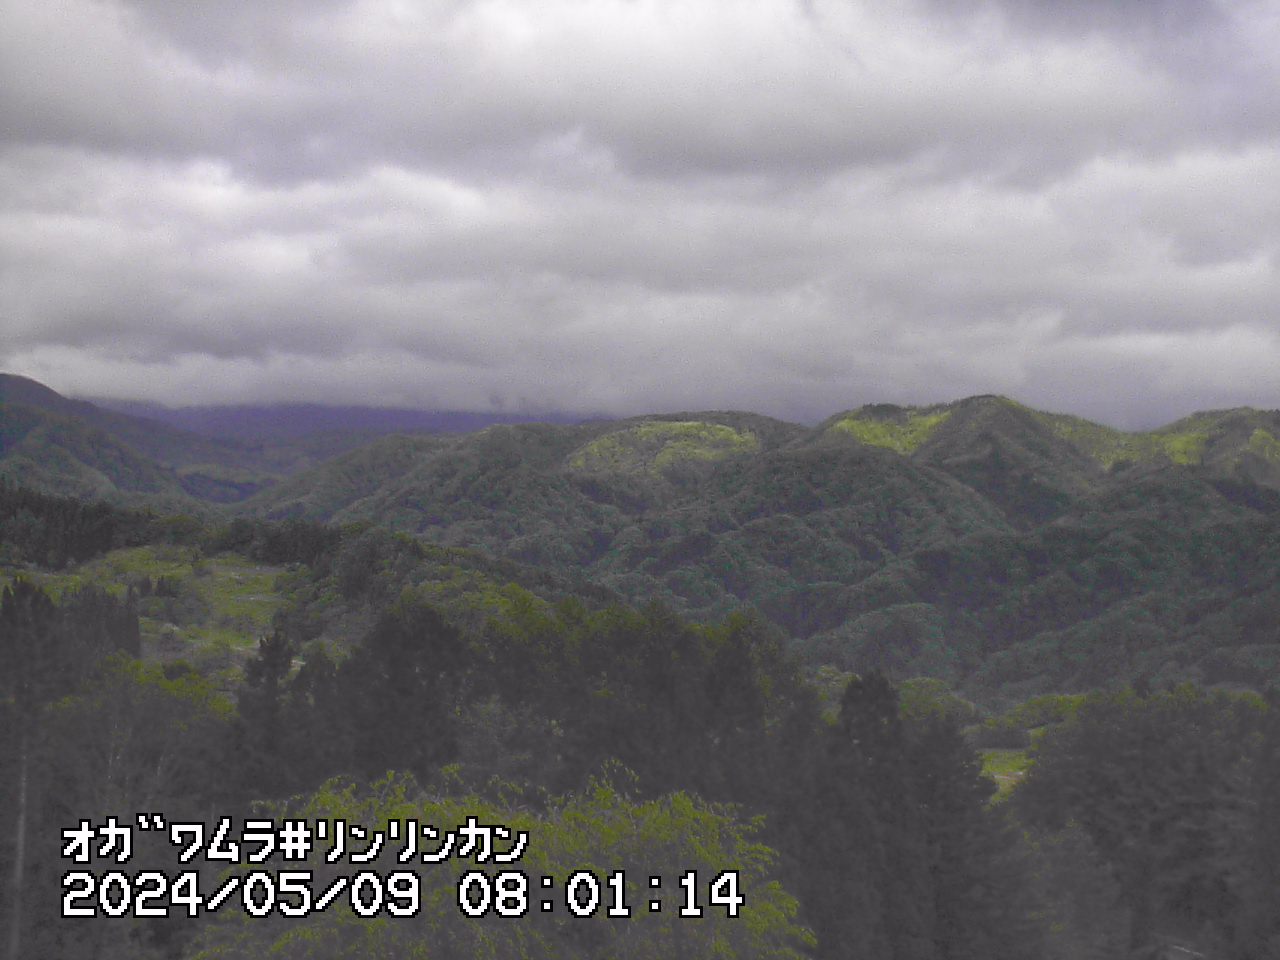 Nagano Alps webcam